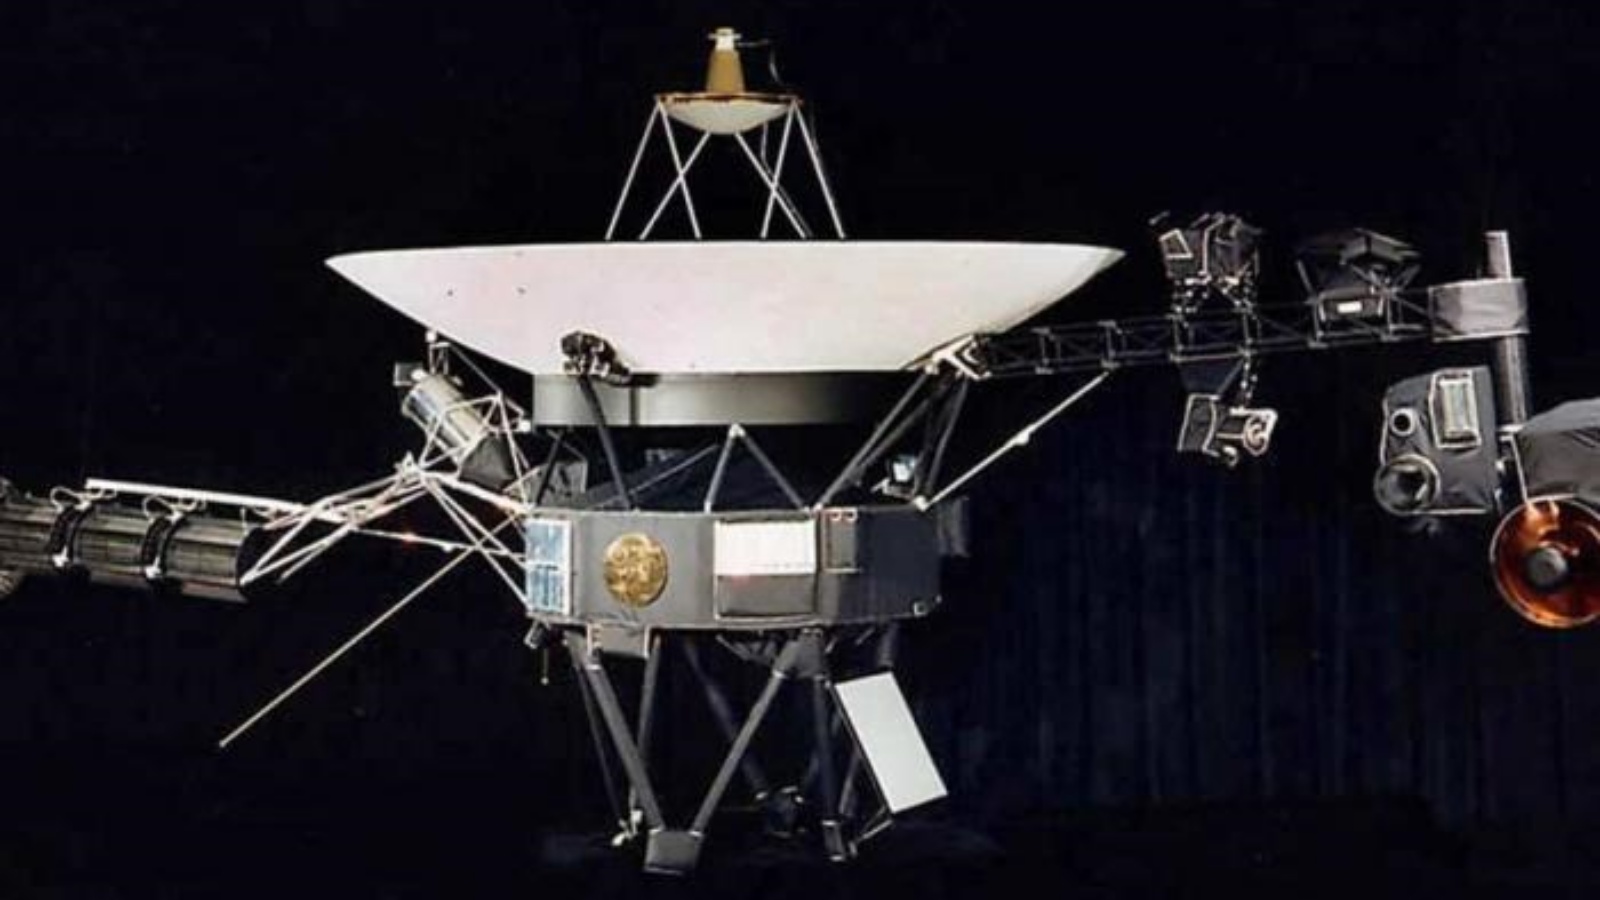 وكالة الفضاء الأميركية (ناسا) أعادت الاتصالات بالكامل مع مسبارها الشهير 